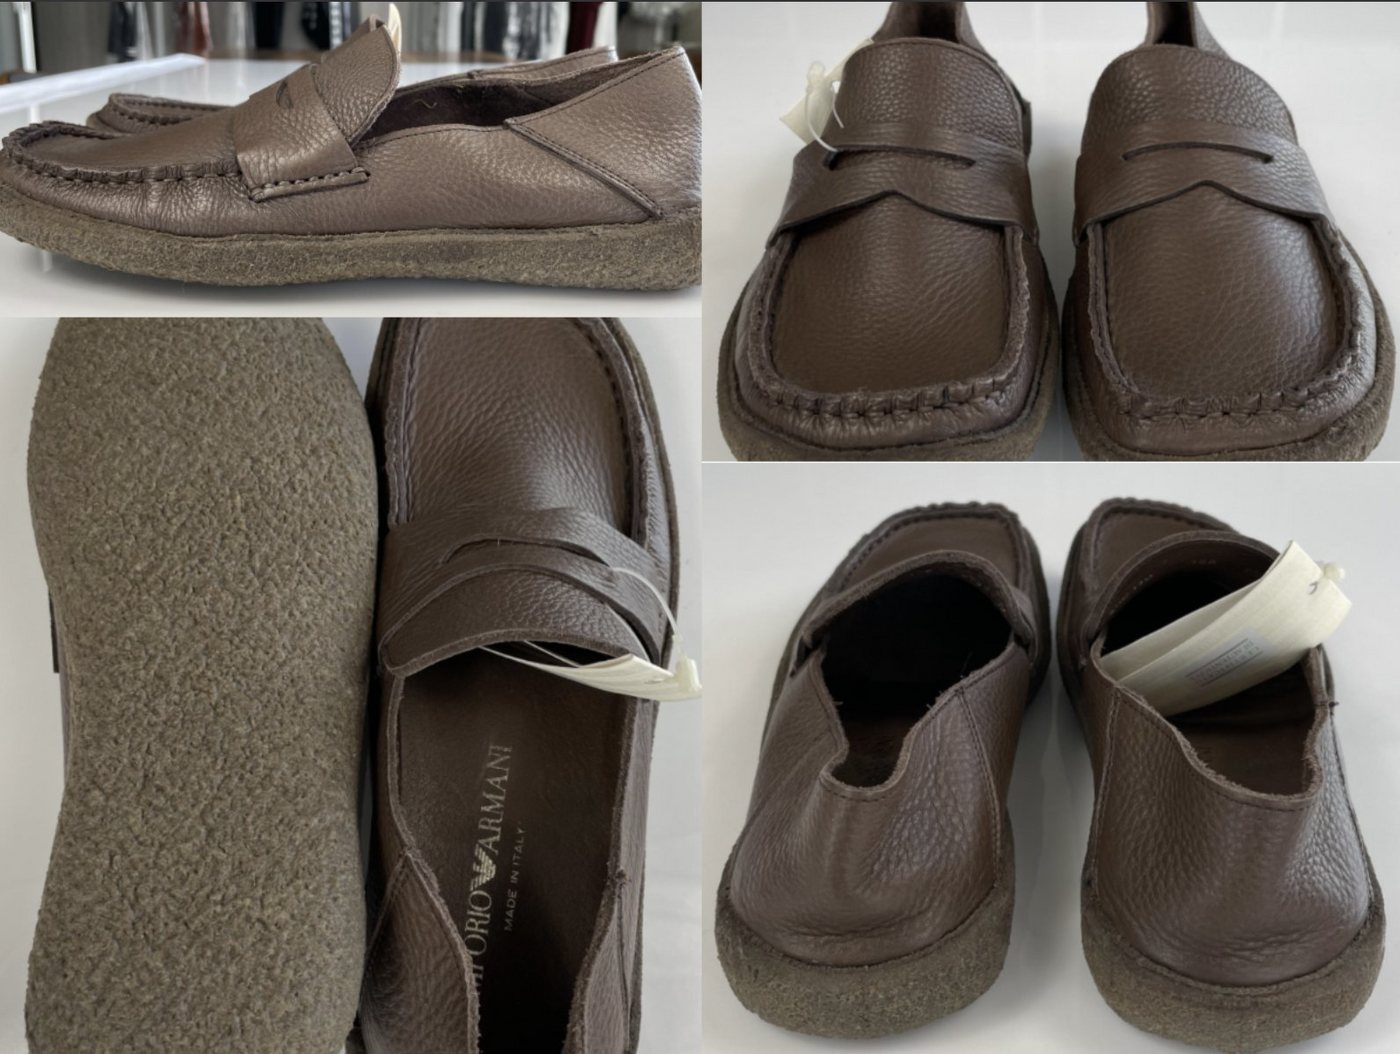 Emporio Armani Emporio Armani Mens Moccasins Loafers Car Driving Shoes Slippers Schuh Sneaker von Emporio Armani